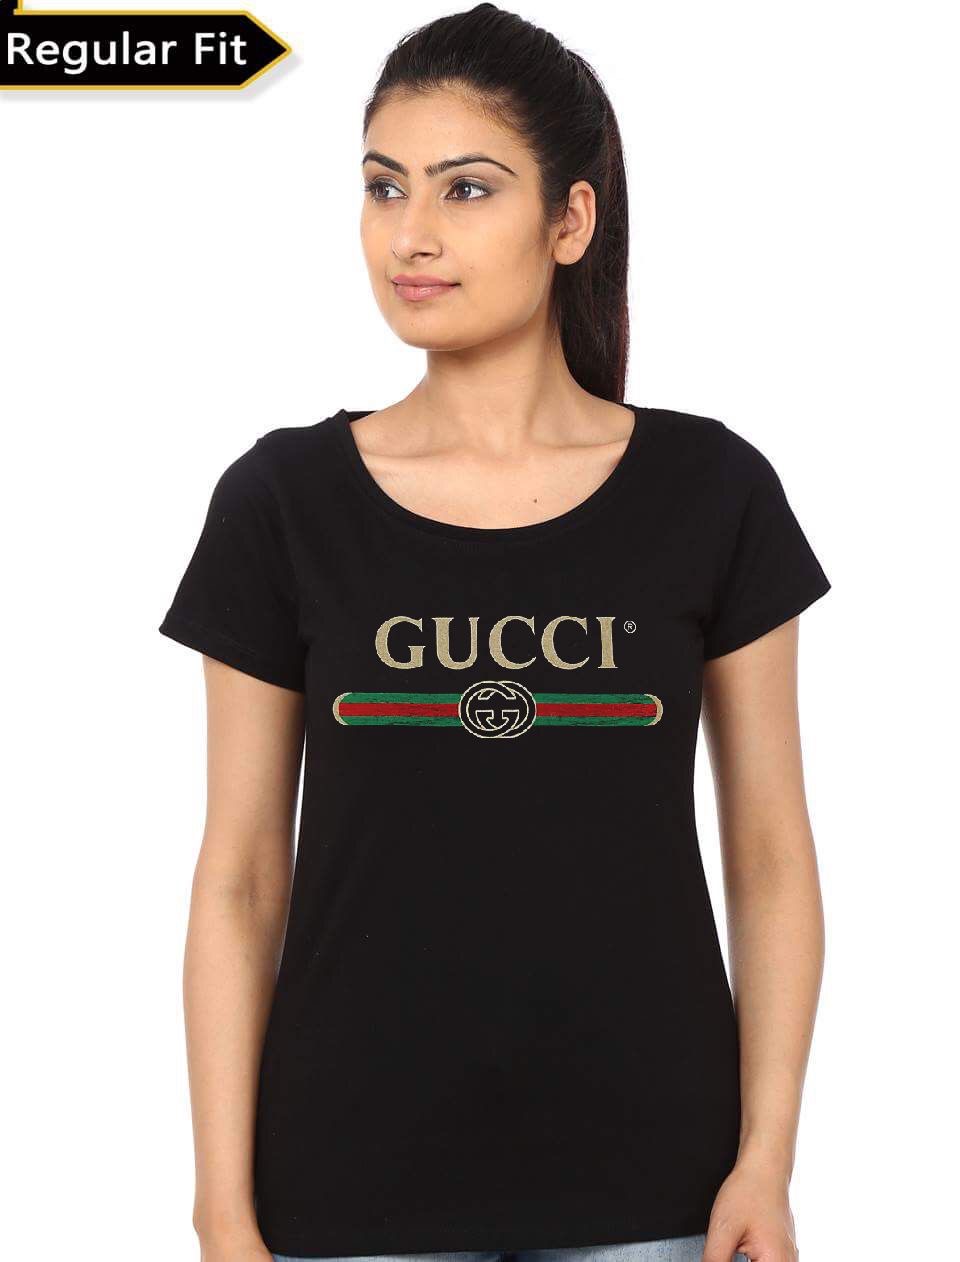 Gucci Women's T-Shirt - Swag Shirts